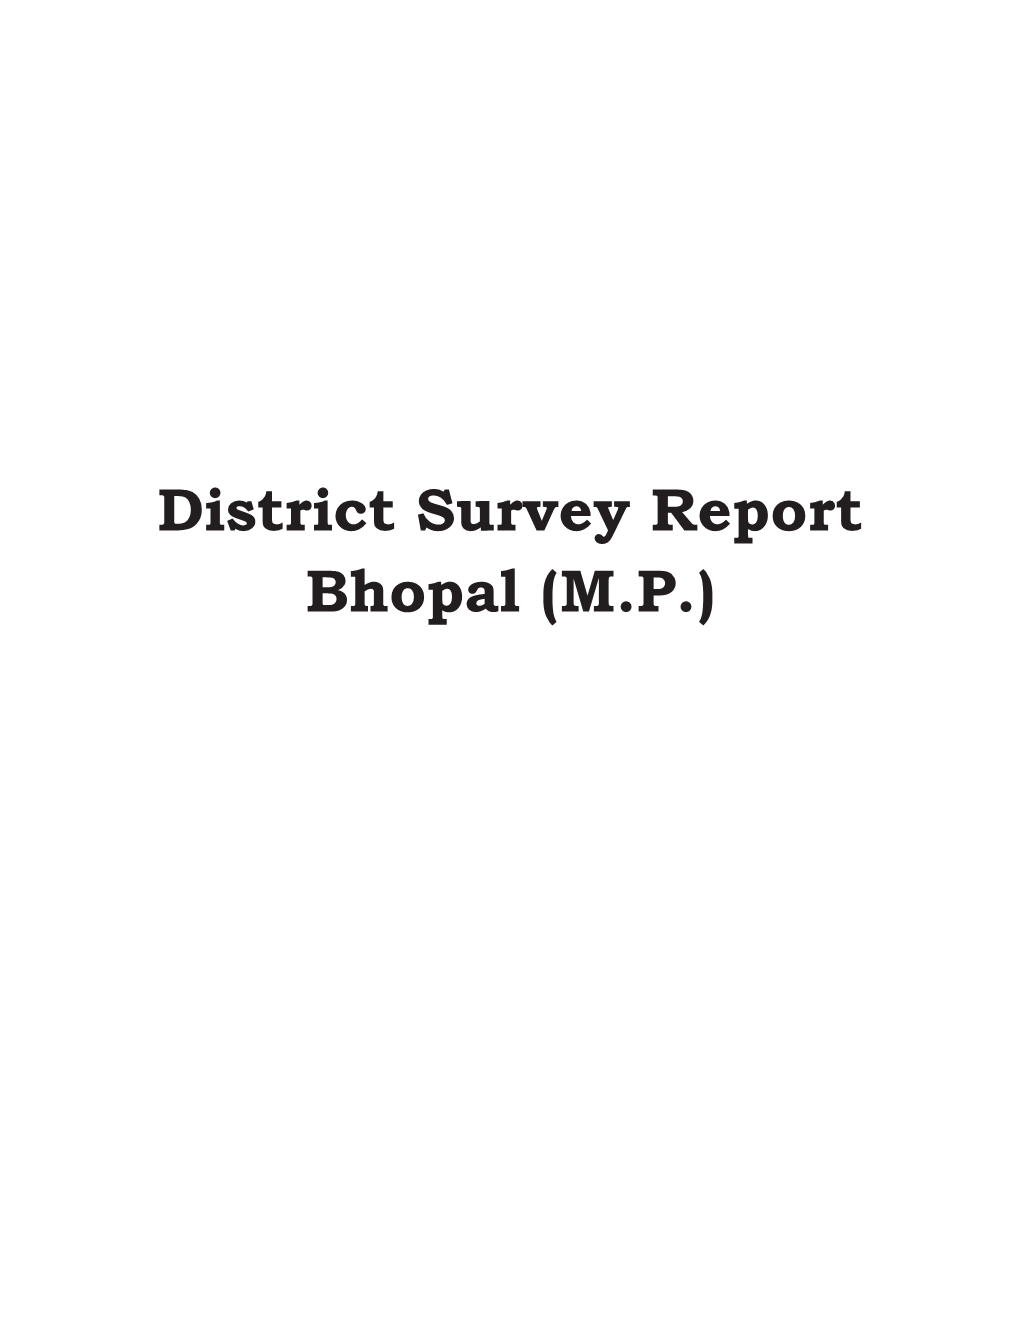 District Survey Report Bhopal (M.P.)